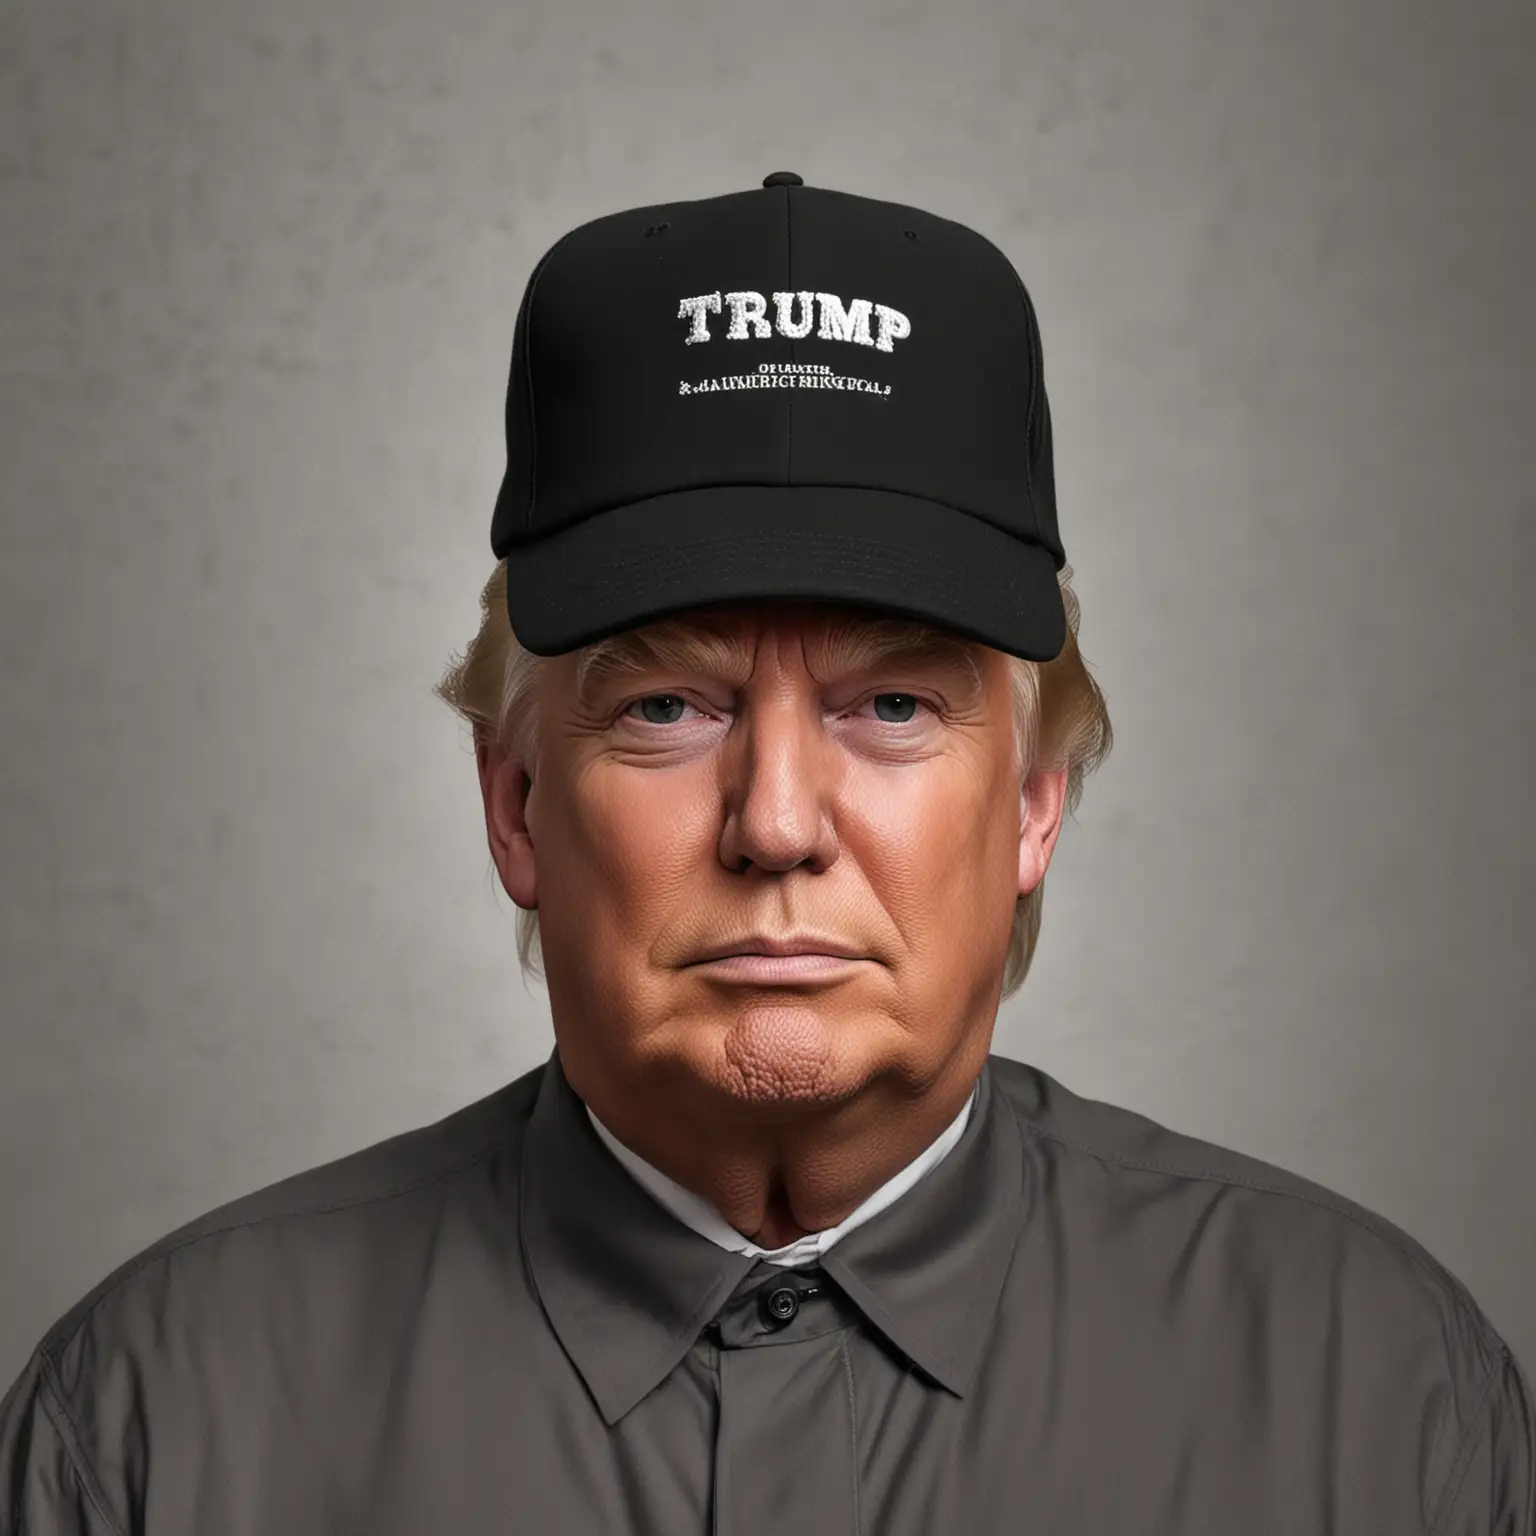 Donald-Trump-Wearing-Black-Hat-Political-Figure-Portrait